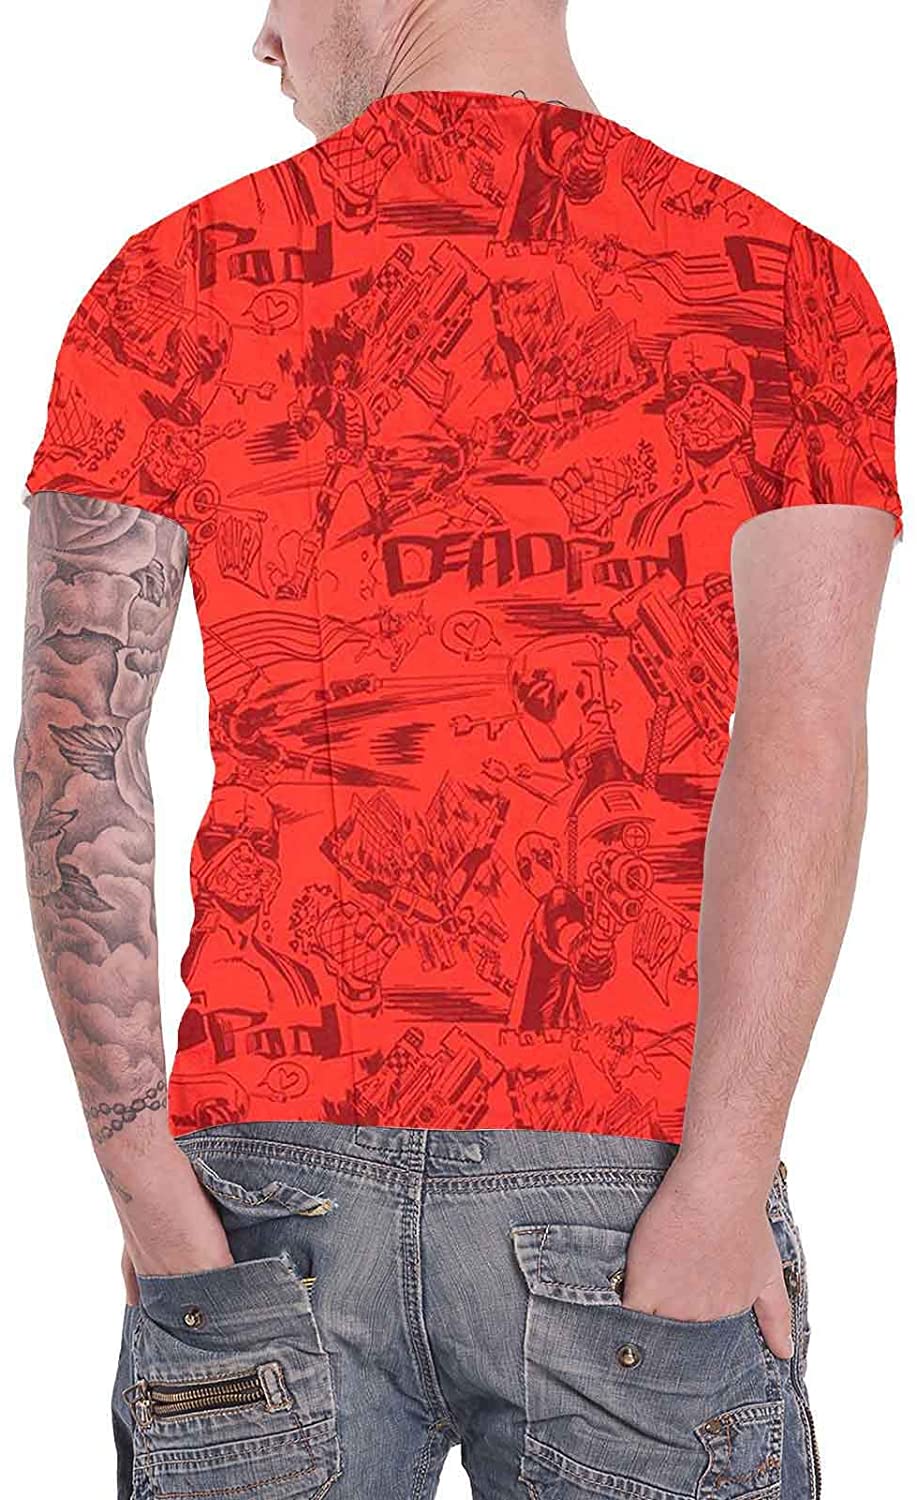 Deadpool - All-Over - Men's T-Shirt